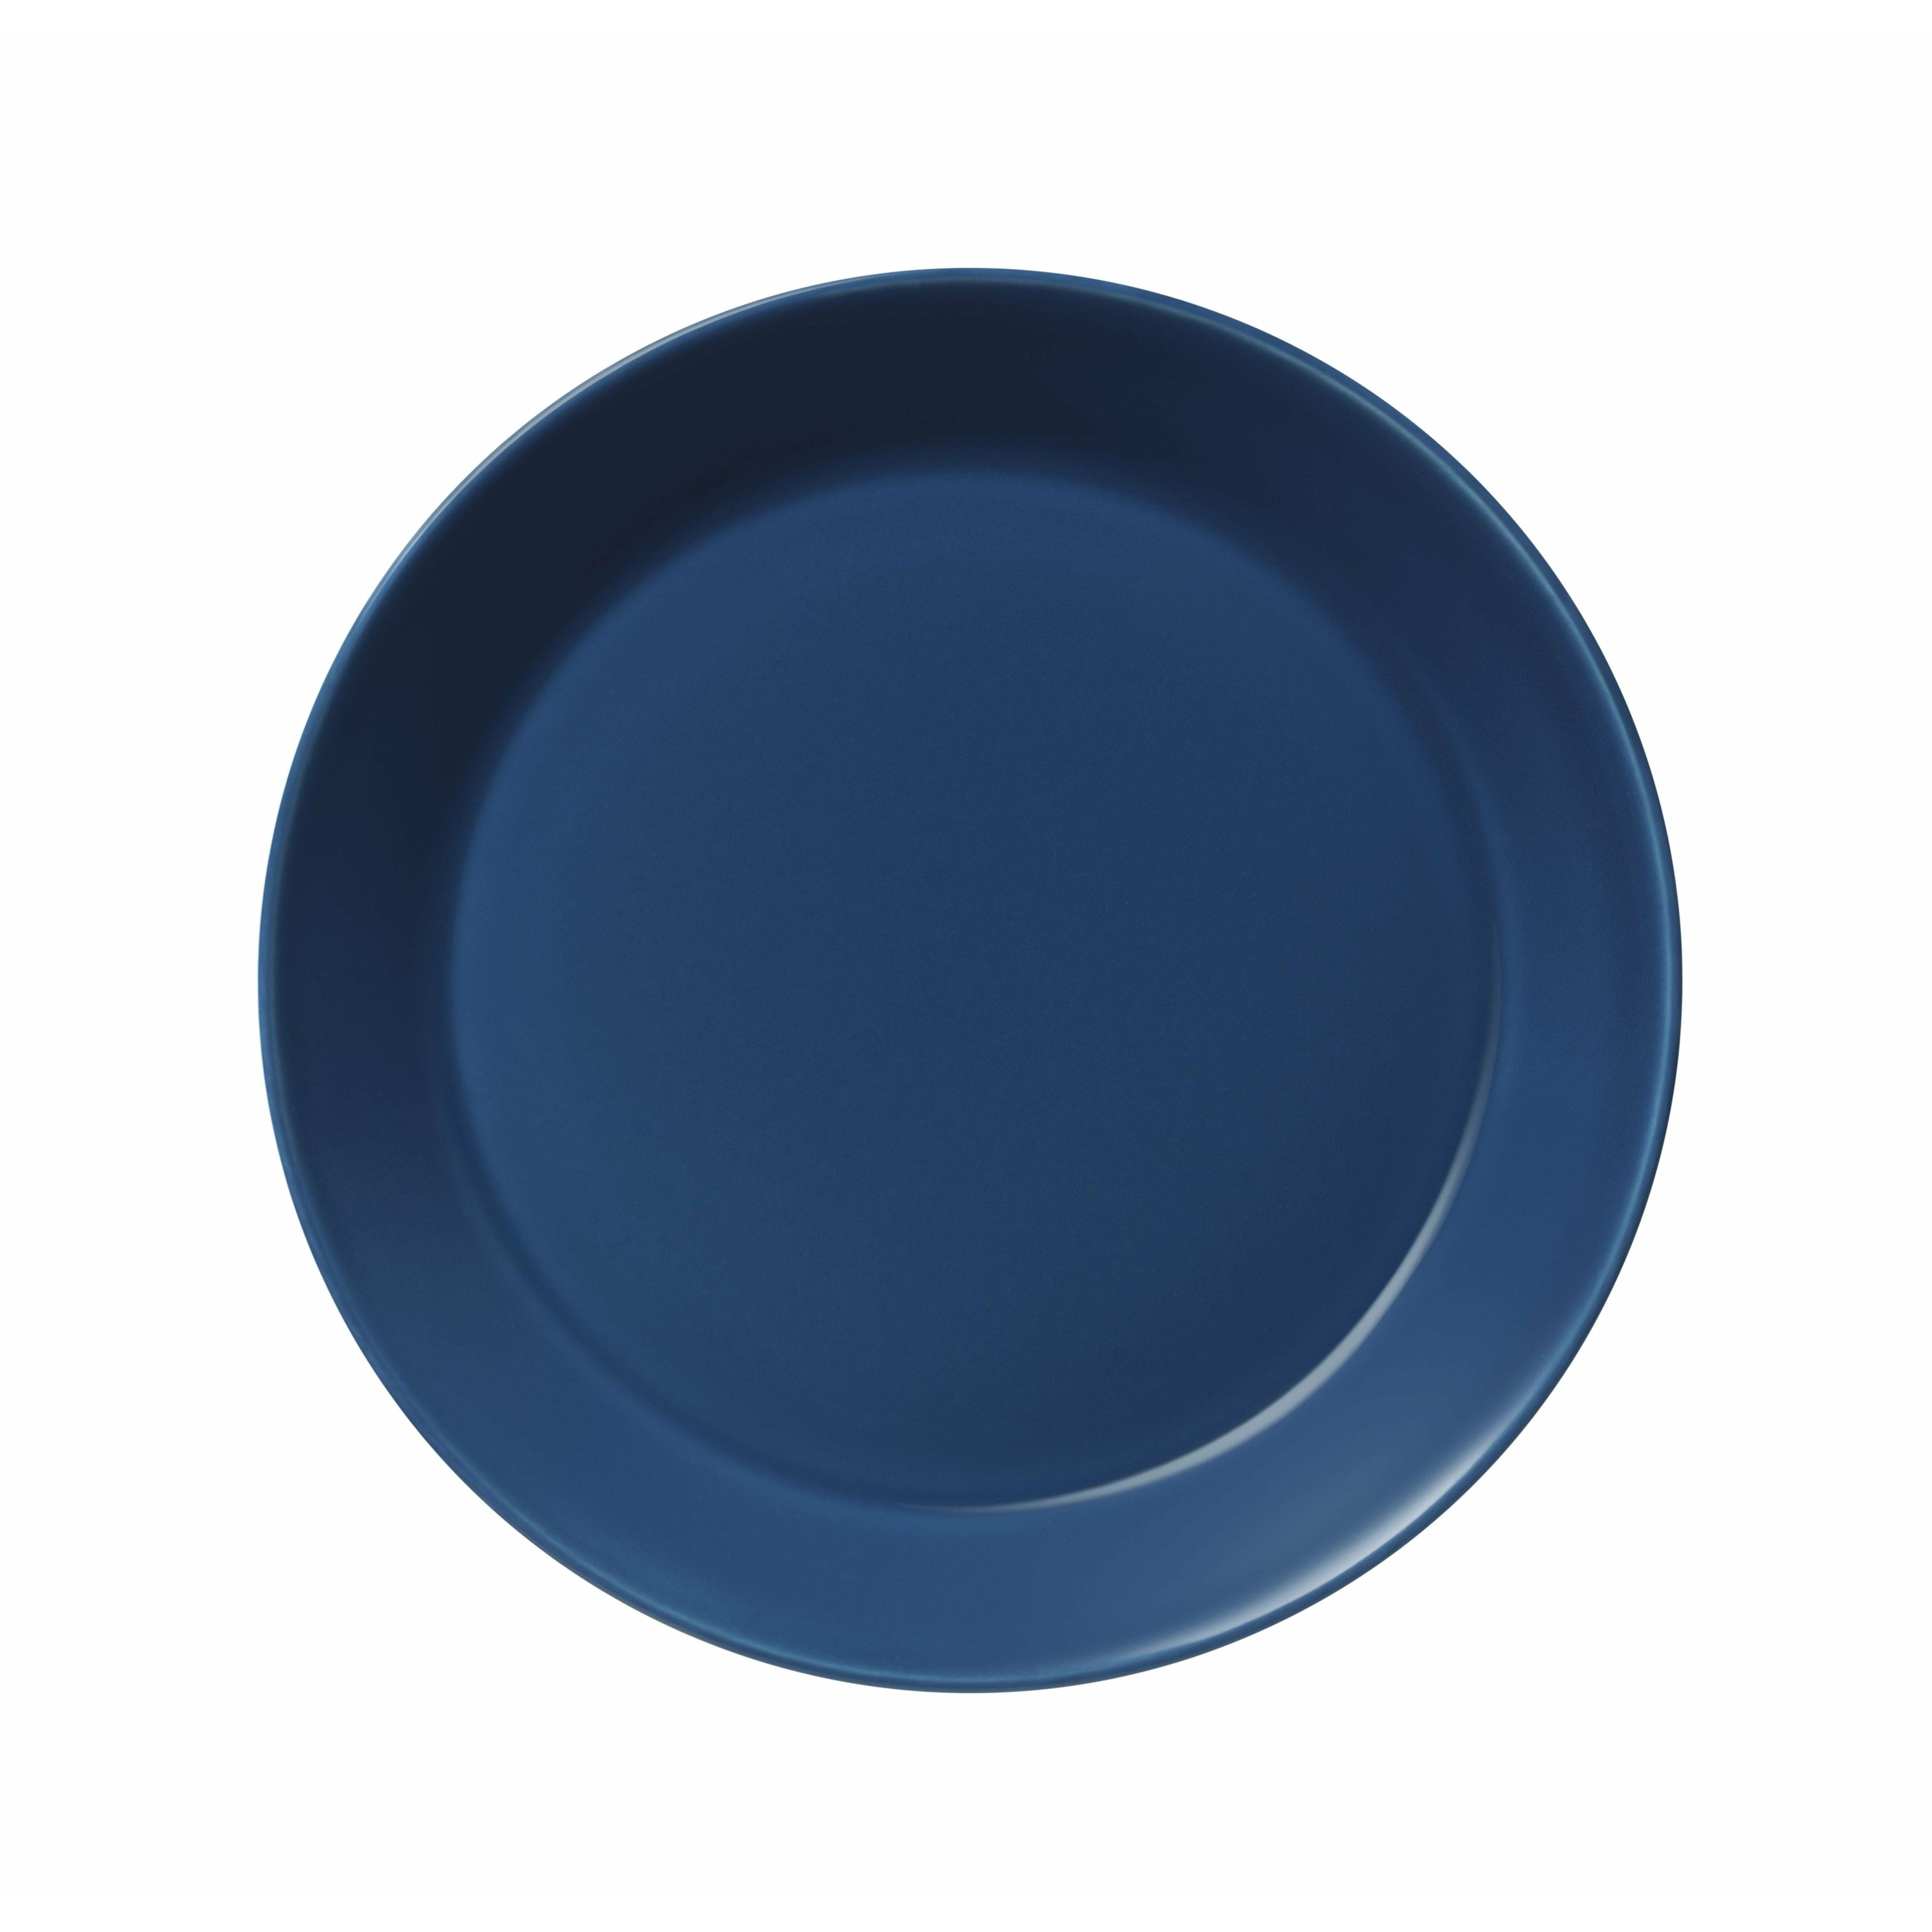 Iittala Teema Plate 21cm, azul vintage